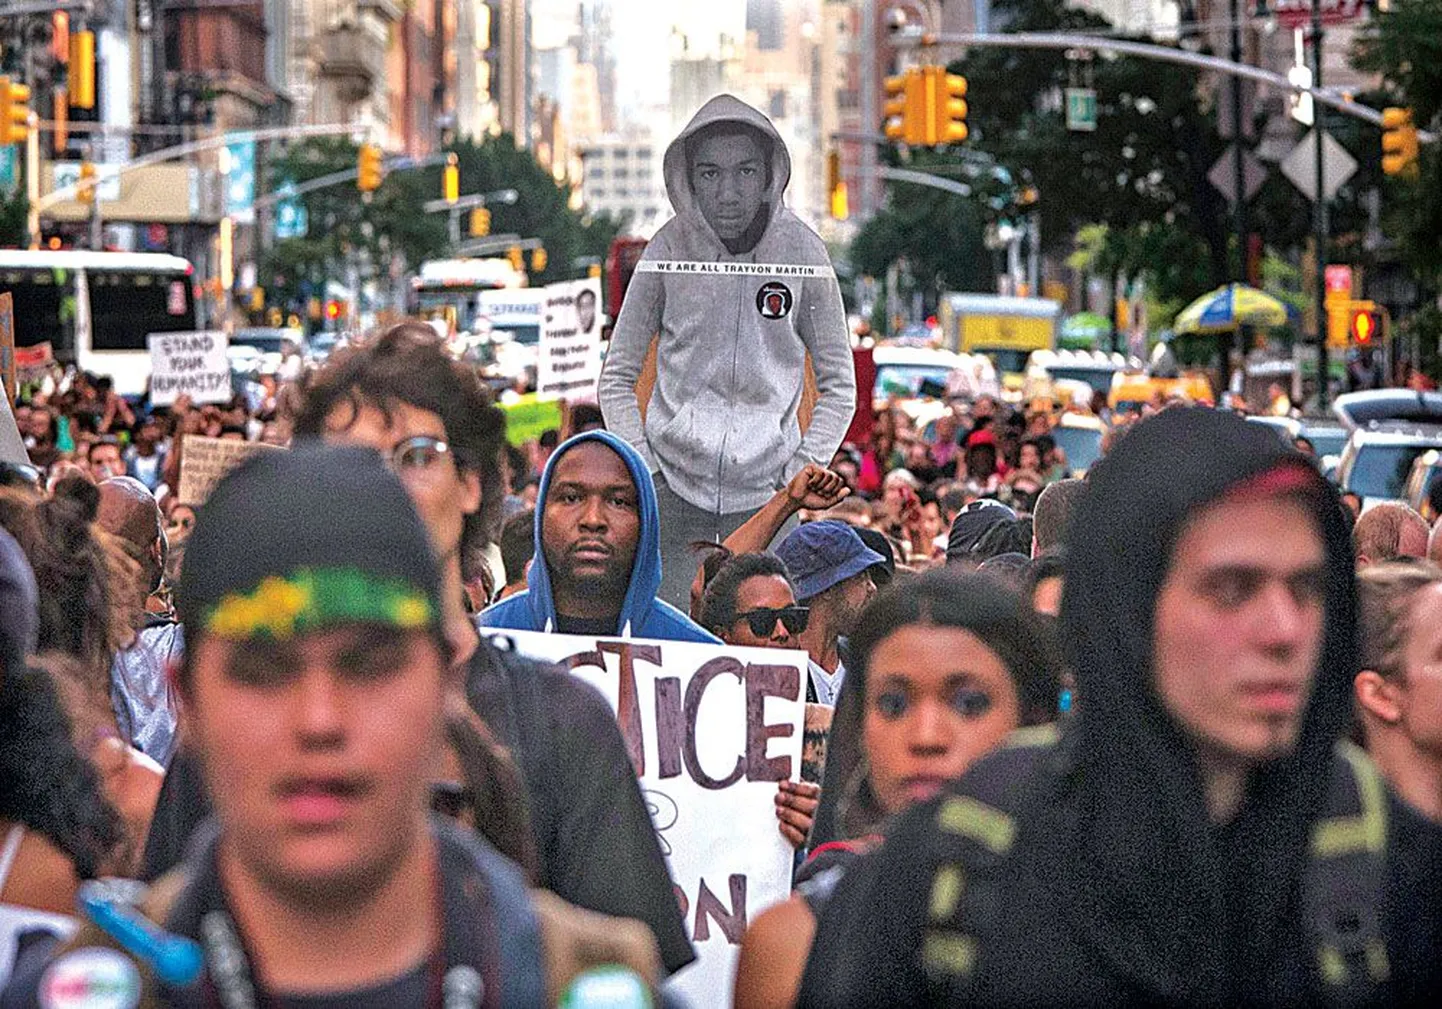 New Yorgis kuulsal Times Square’il toimunud meeleavaldusel kandsid protestijad ka tapetud Trayvon Martini pildiga plakateid.